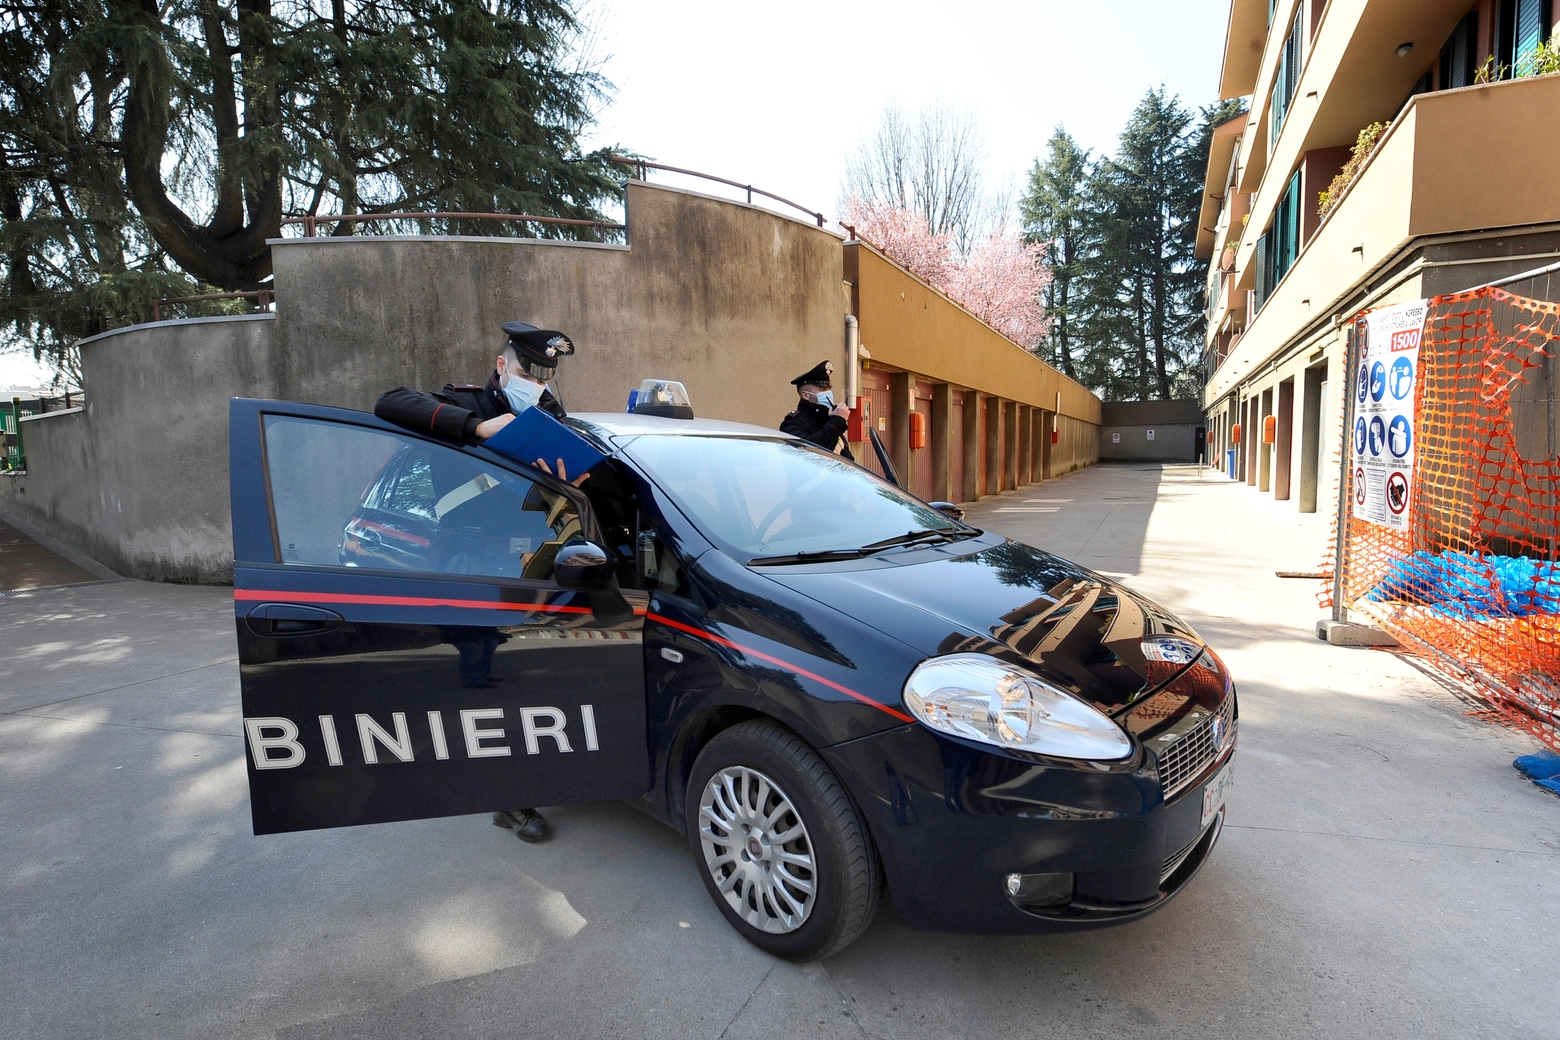 La pattuglia dei carabinieri è intervenuta dopo la richiesta di aiuto della donna